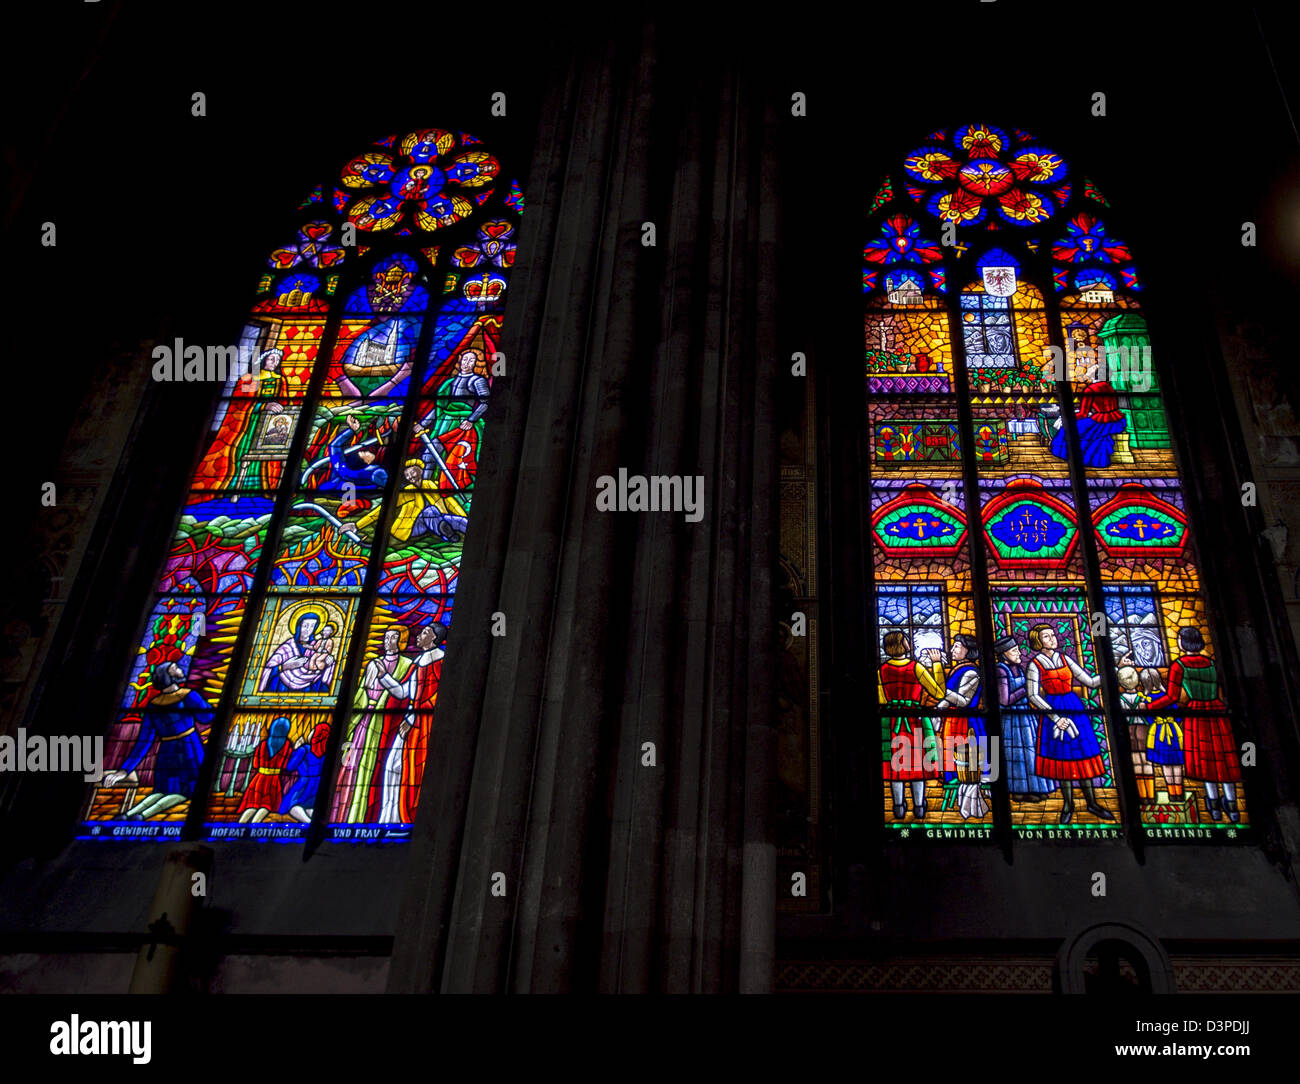 Chiesa votiva in vetro colorato. Colori ricchi e dettagliato racconto sono le principali caratteristiche di questi magnifici windows. Foto Stock